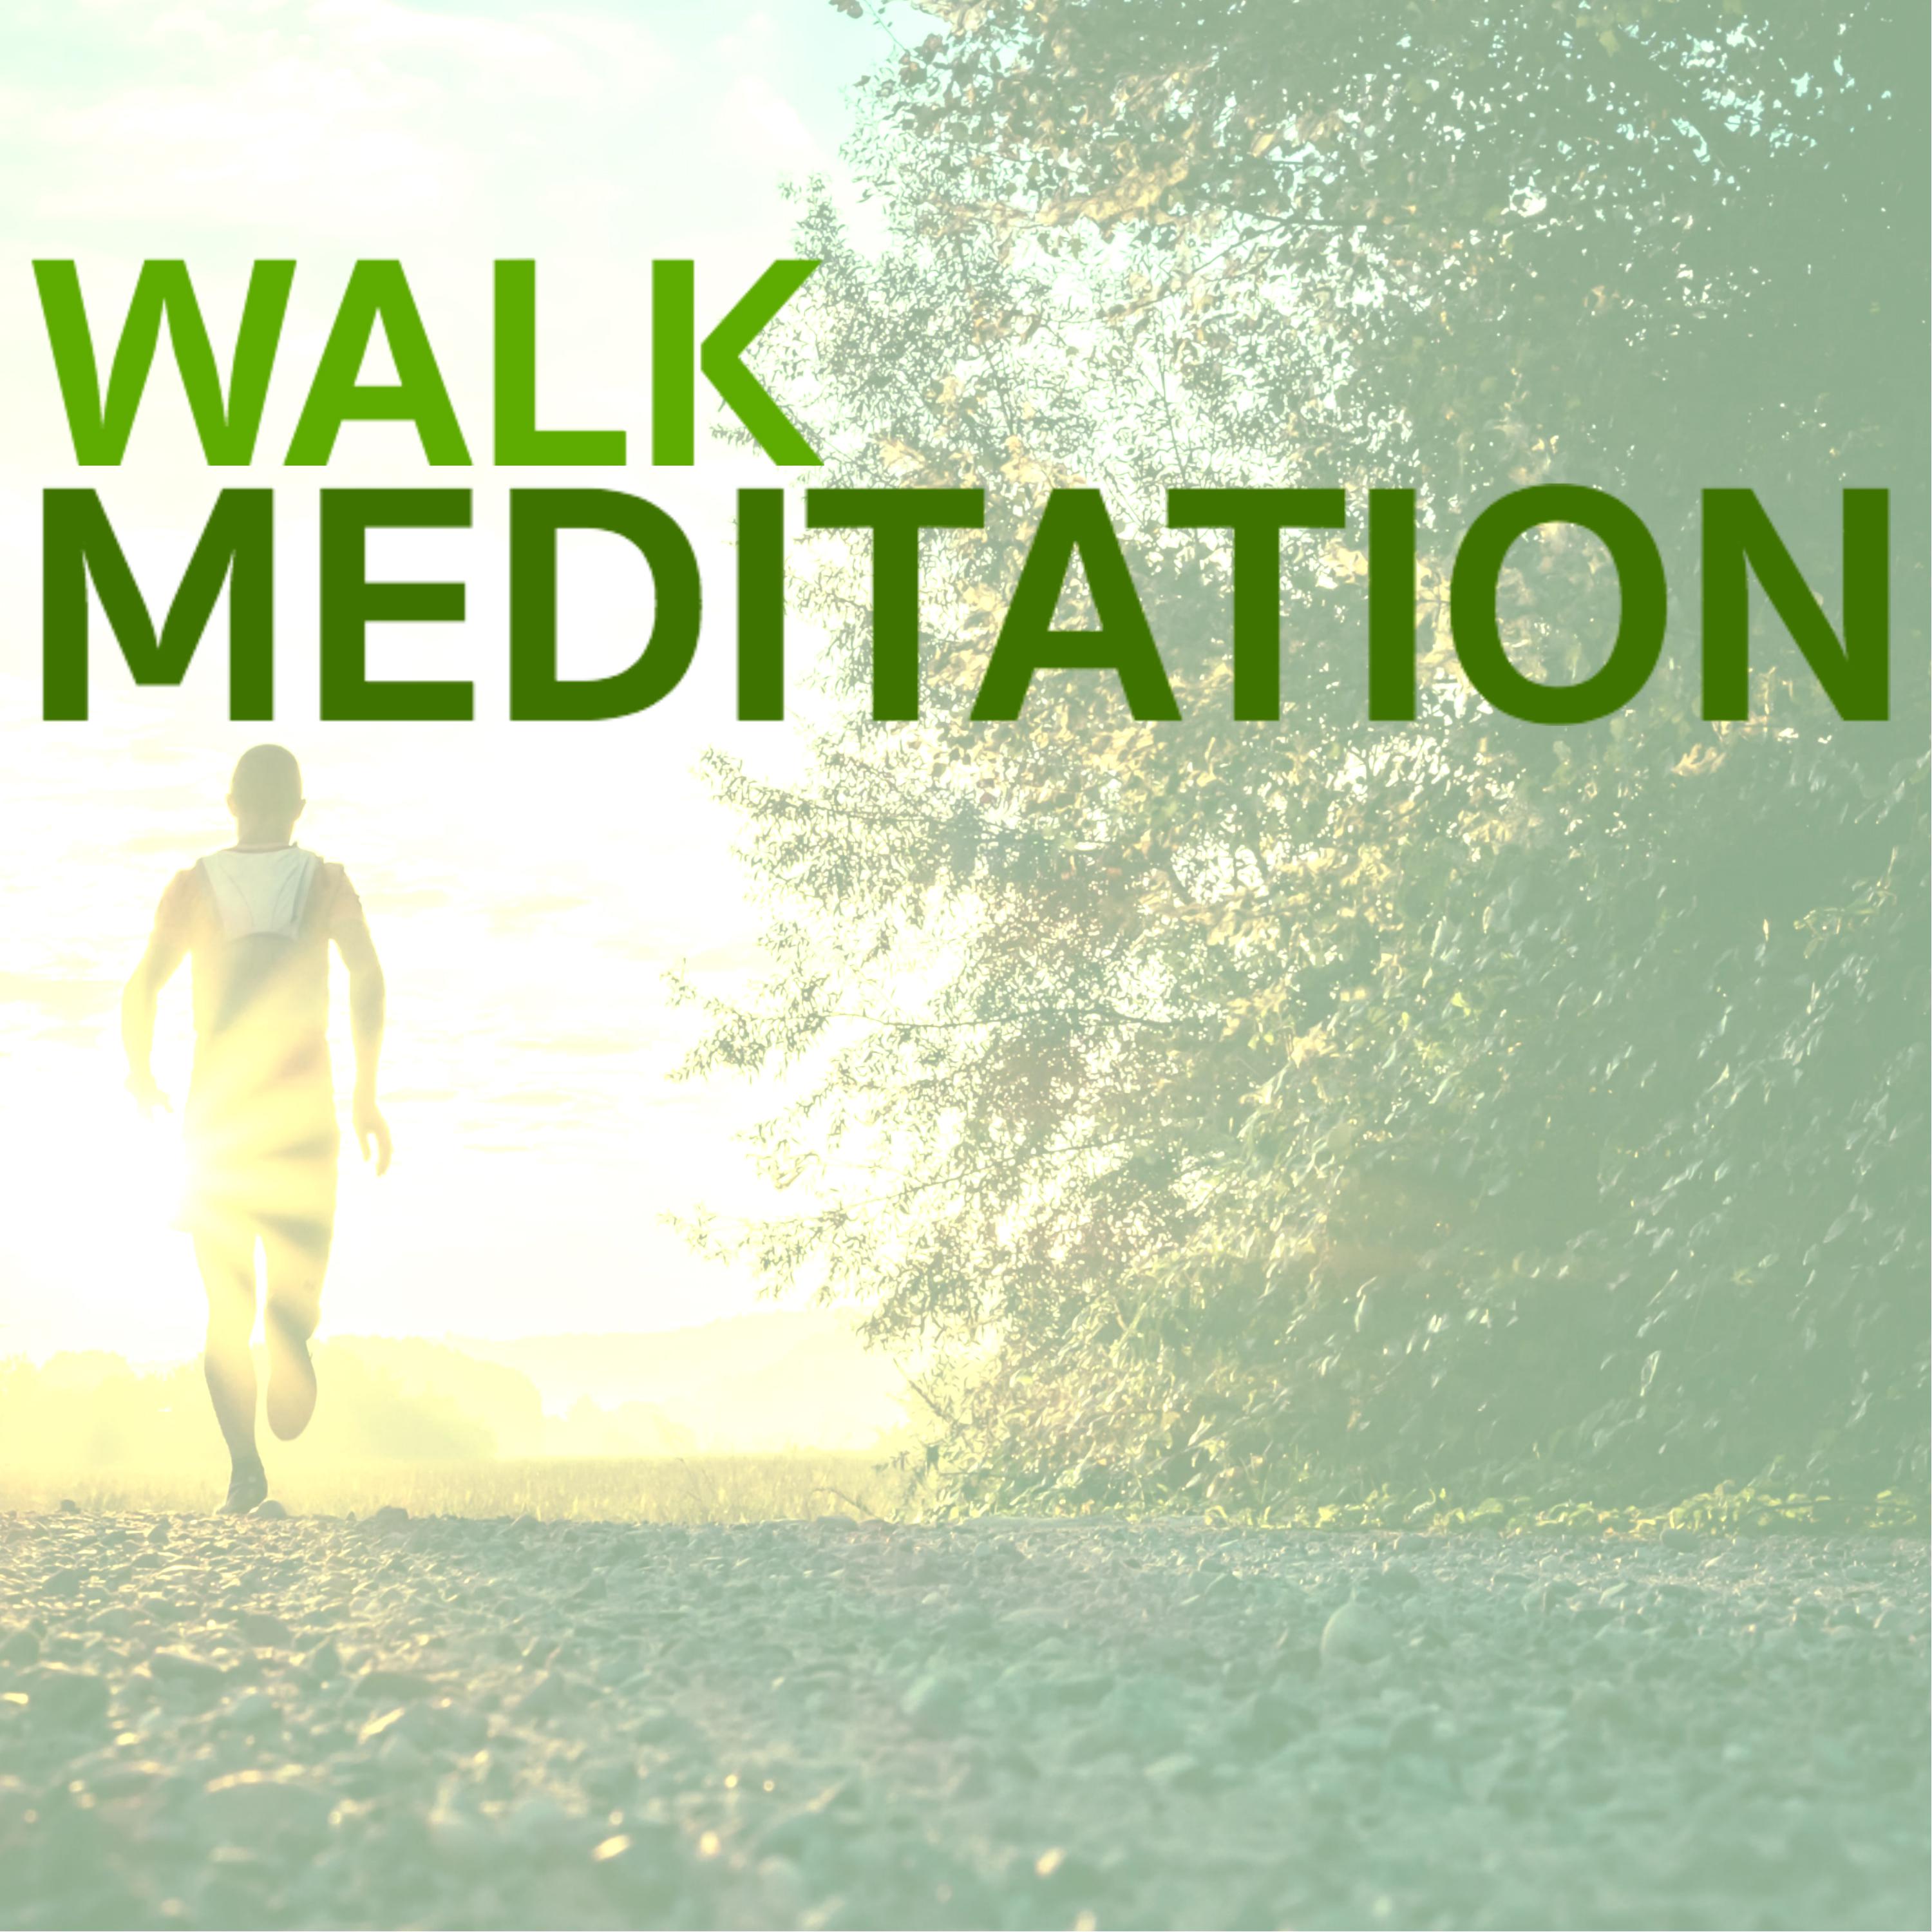 Walk Meditation